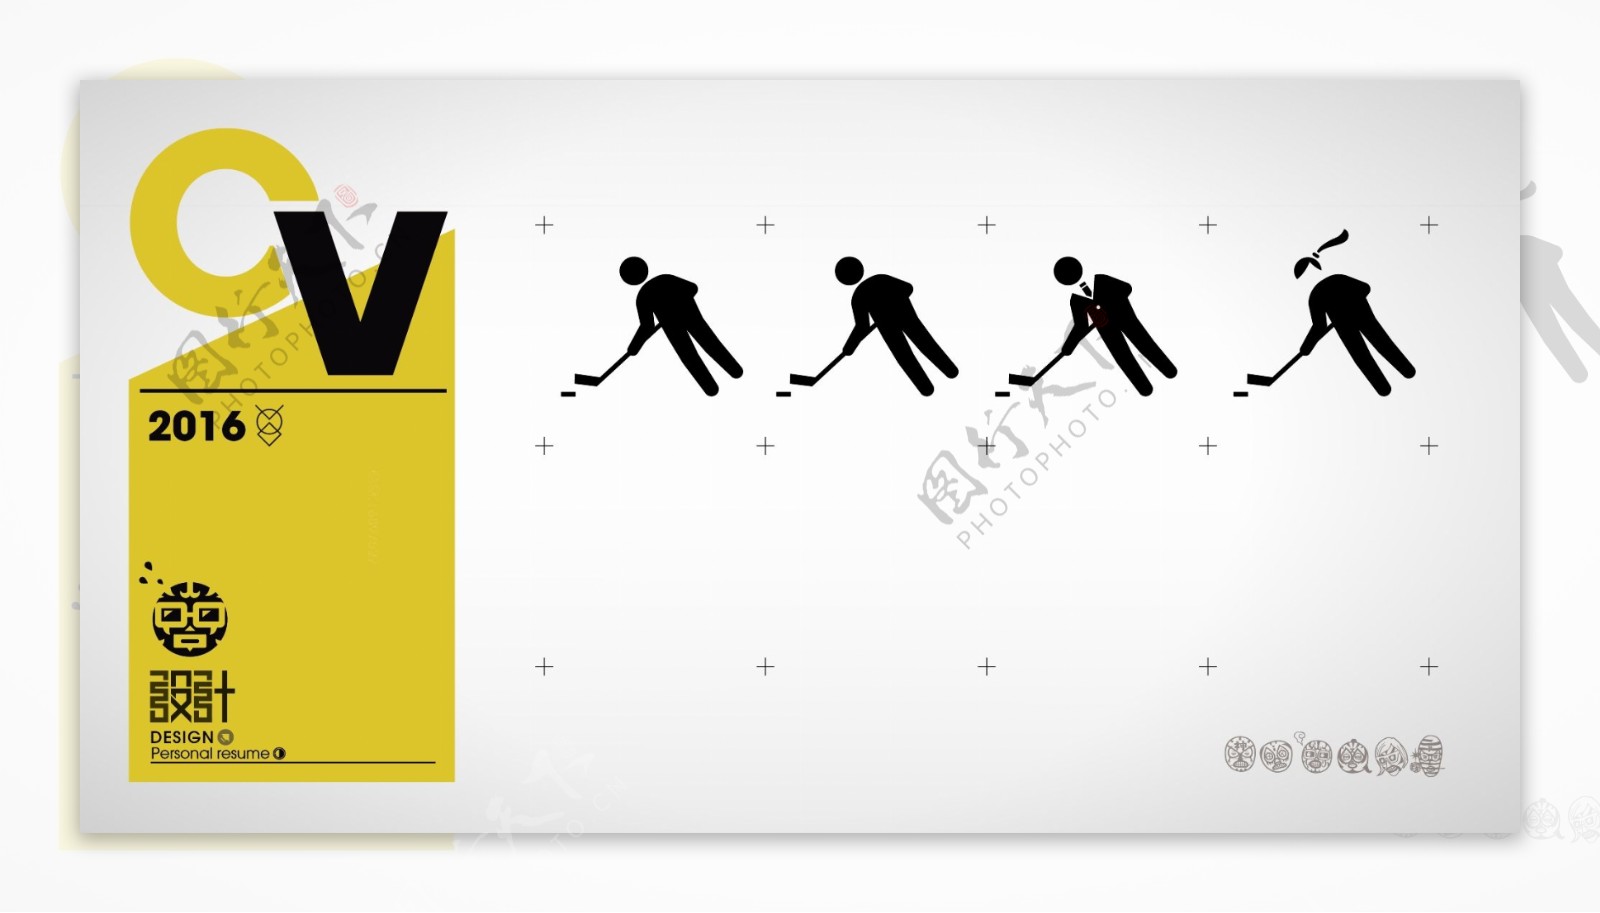 奥运会冰球剪影小人公共标识标志图标设计